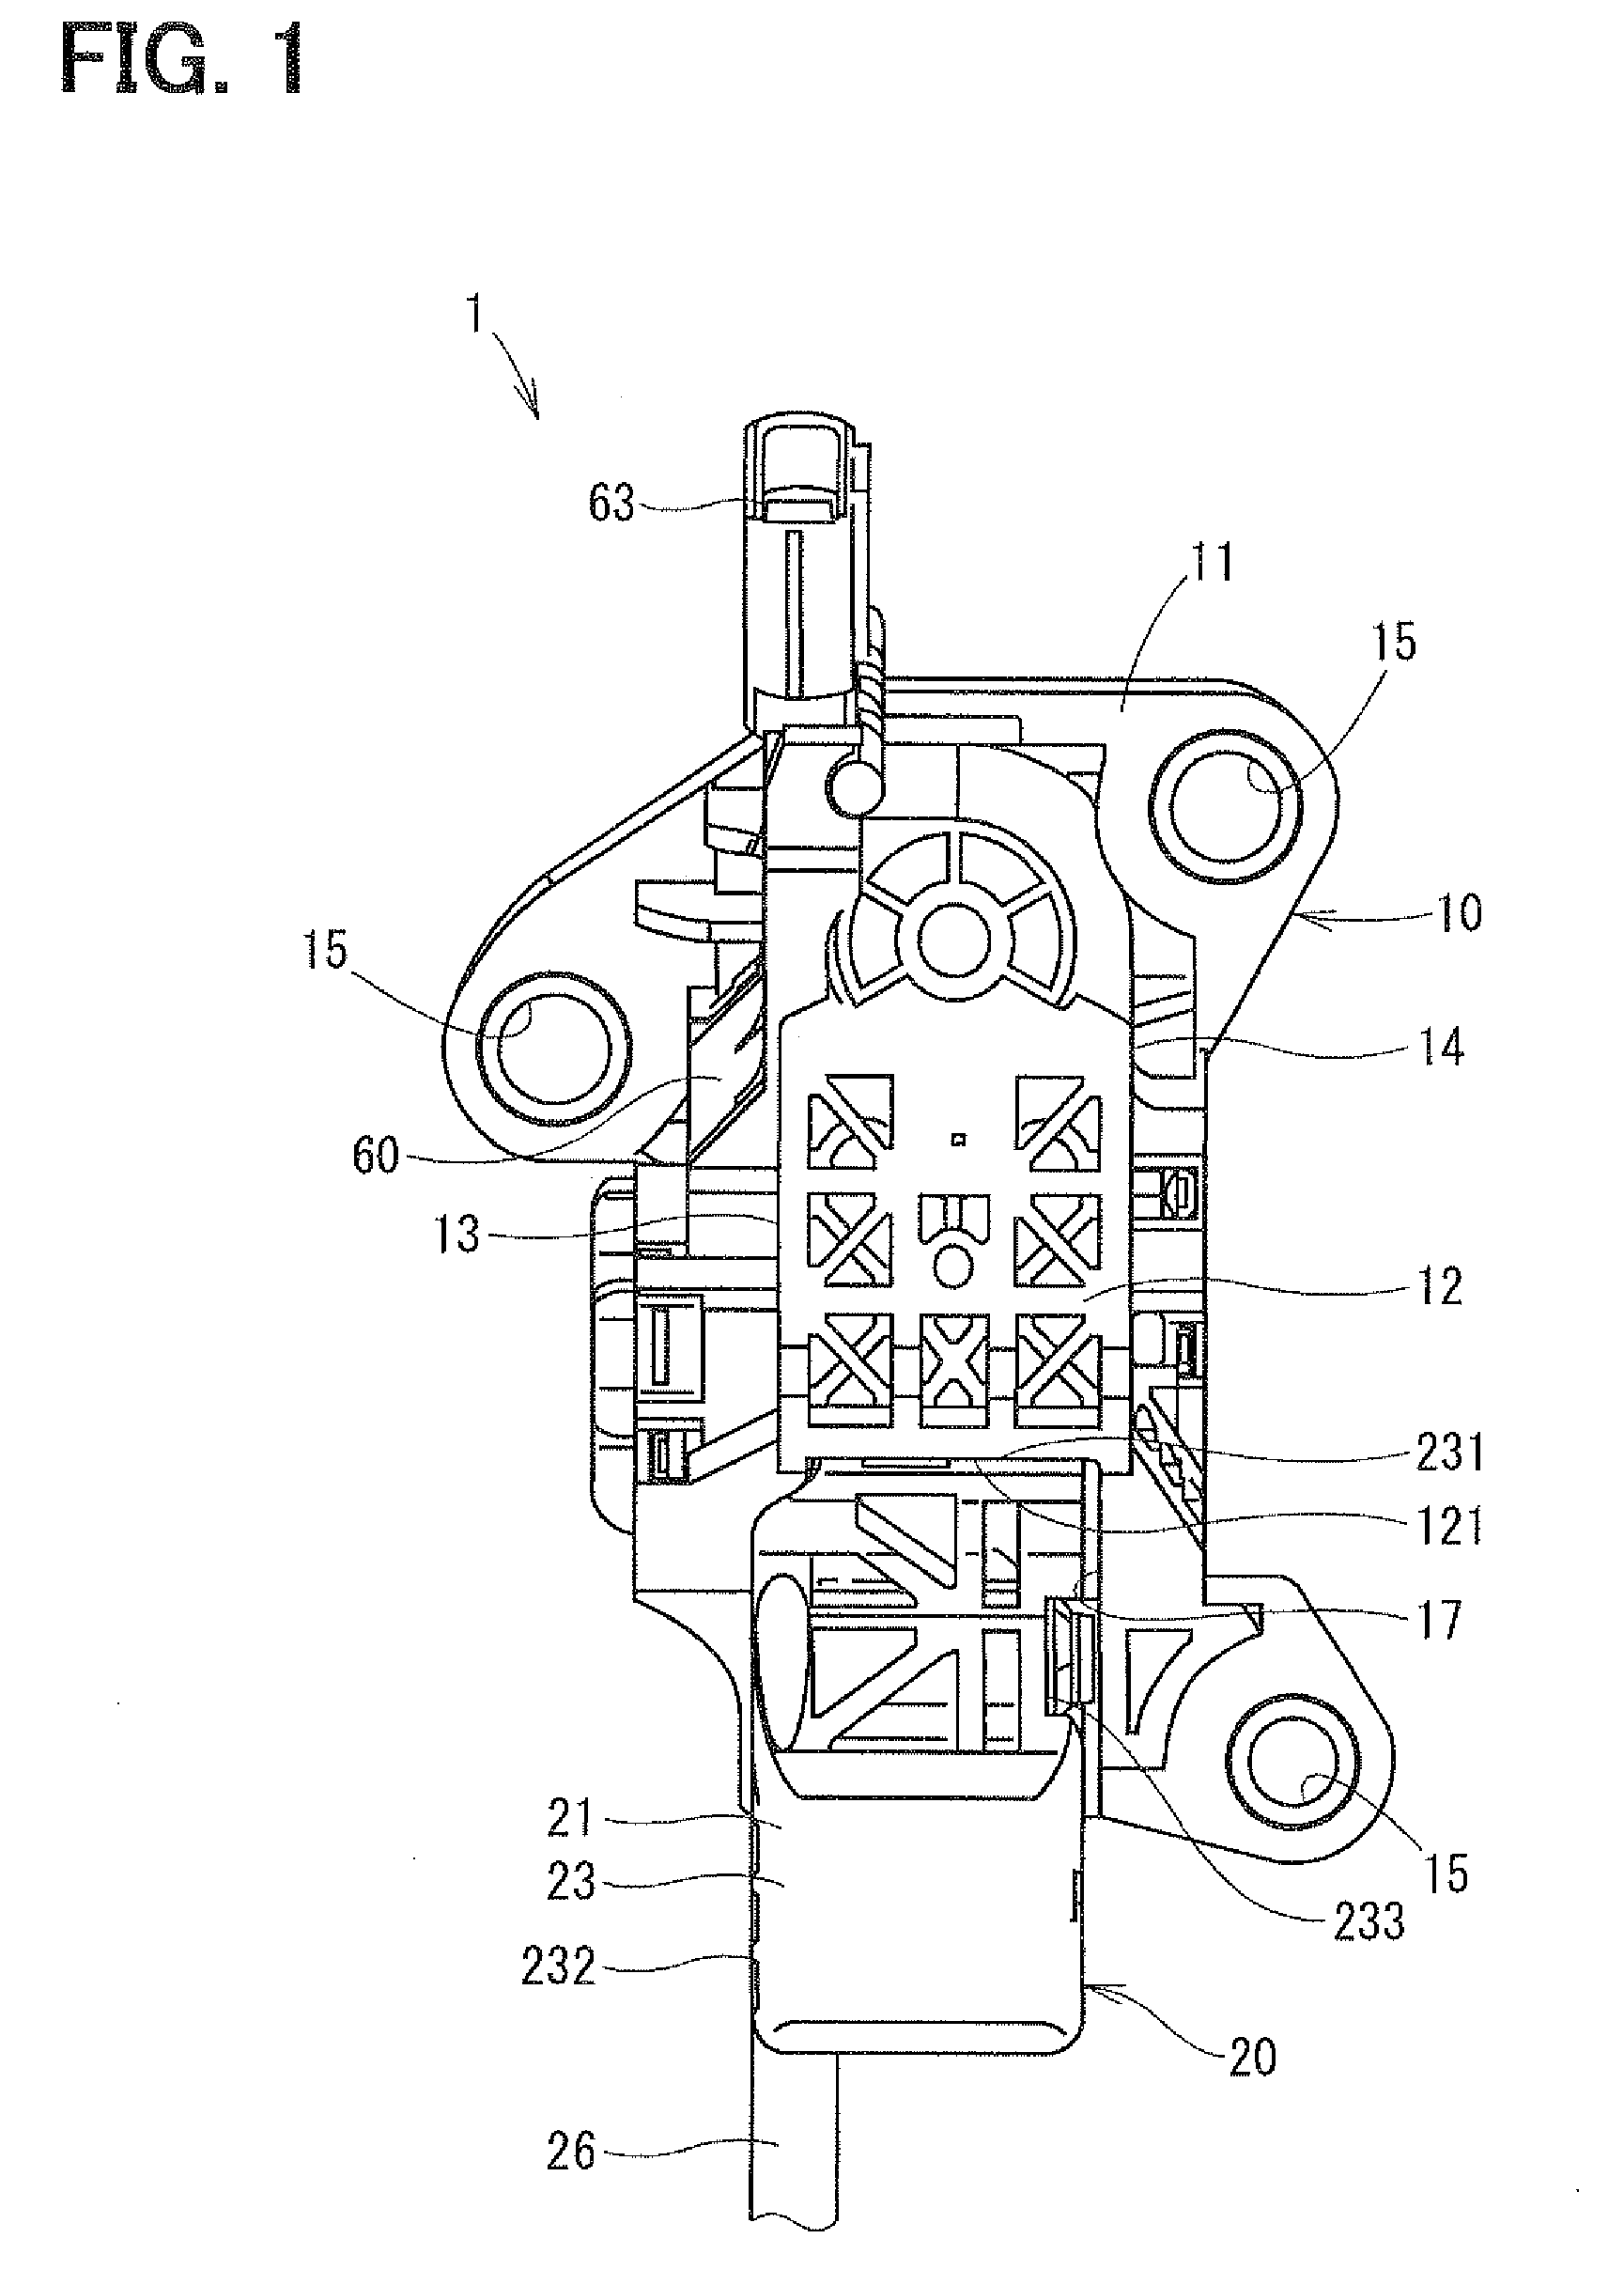 Pedal apparatus